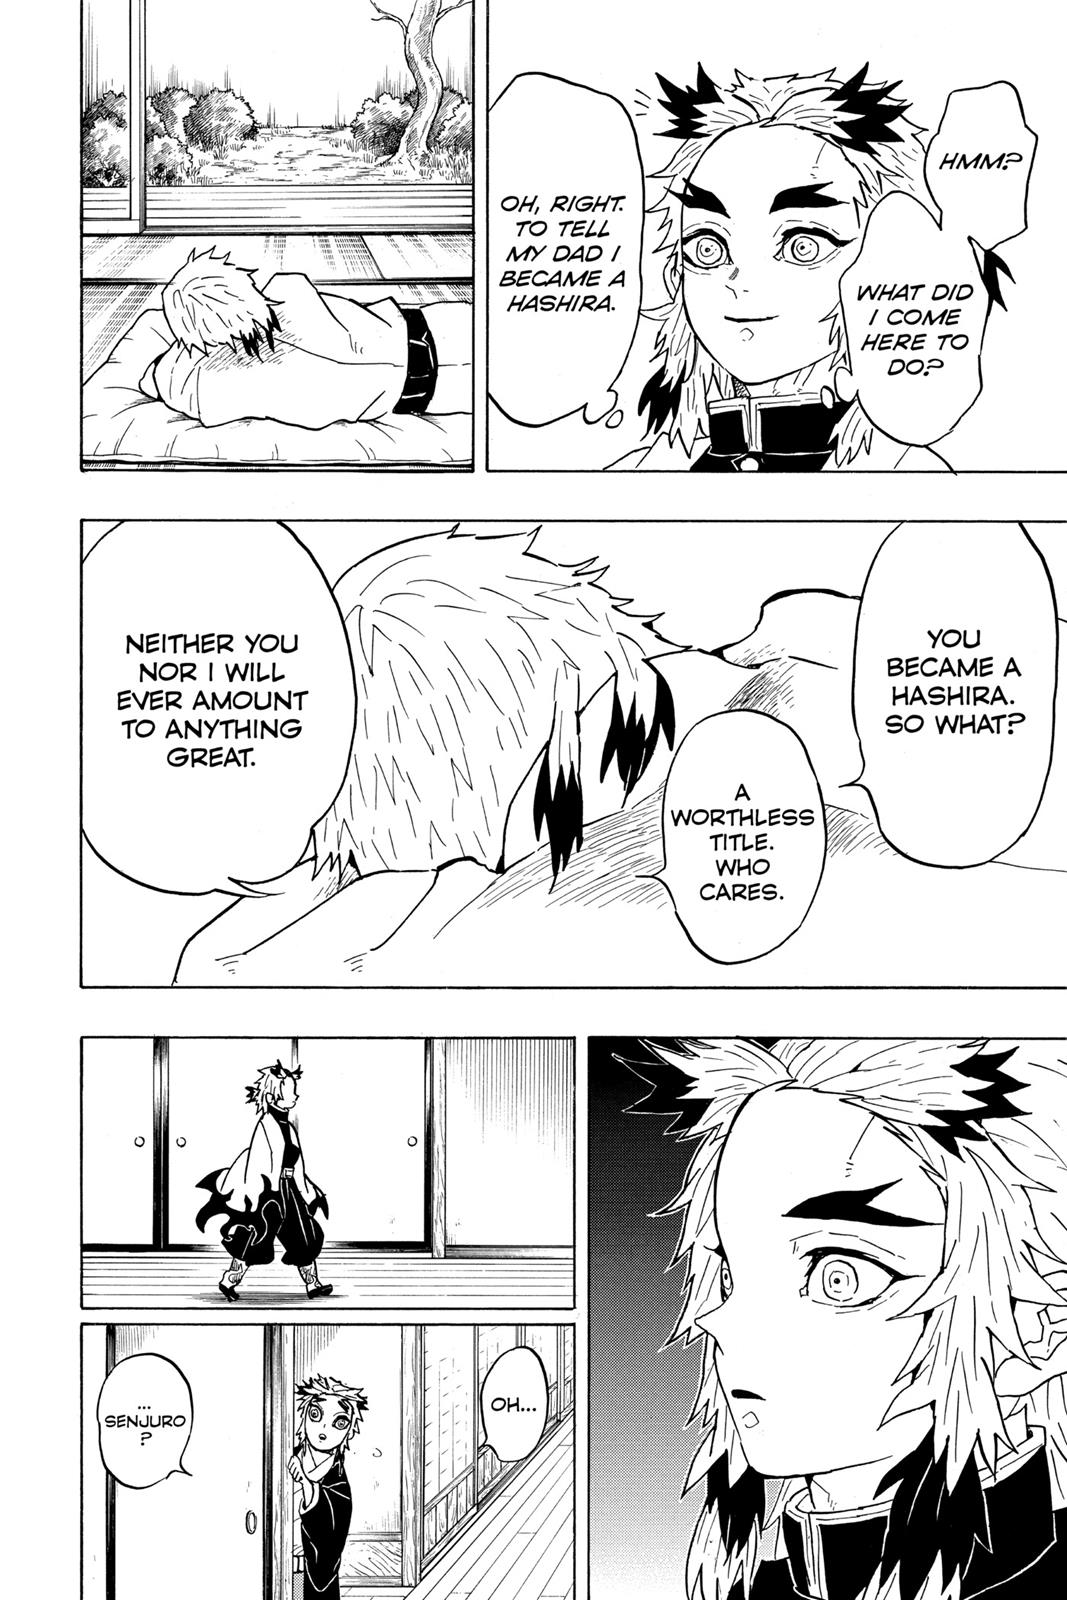 Demon Slayer Manga Manga Chapter - 55 - image 10